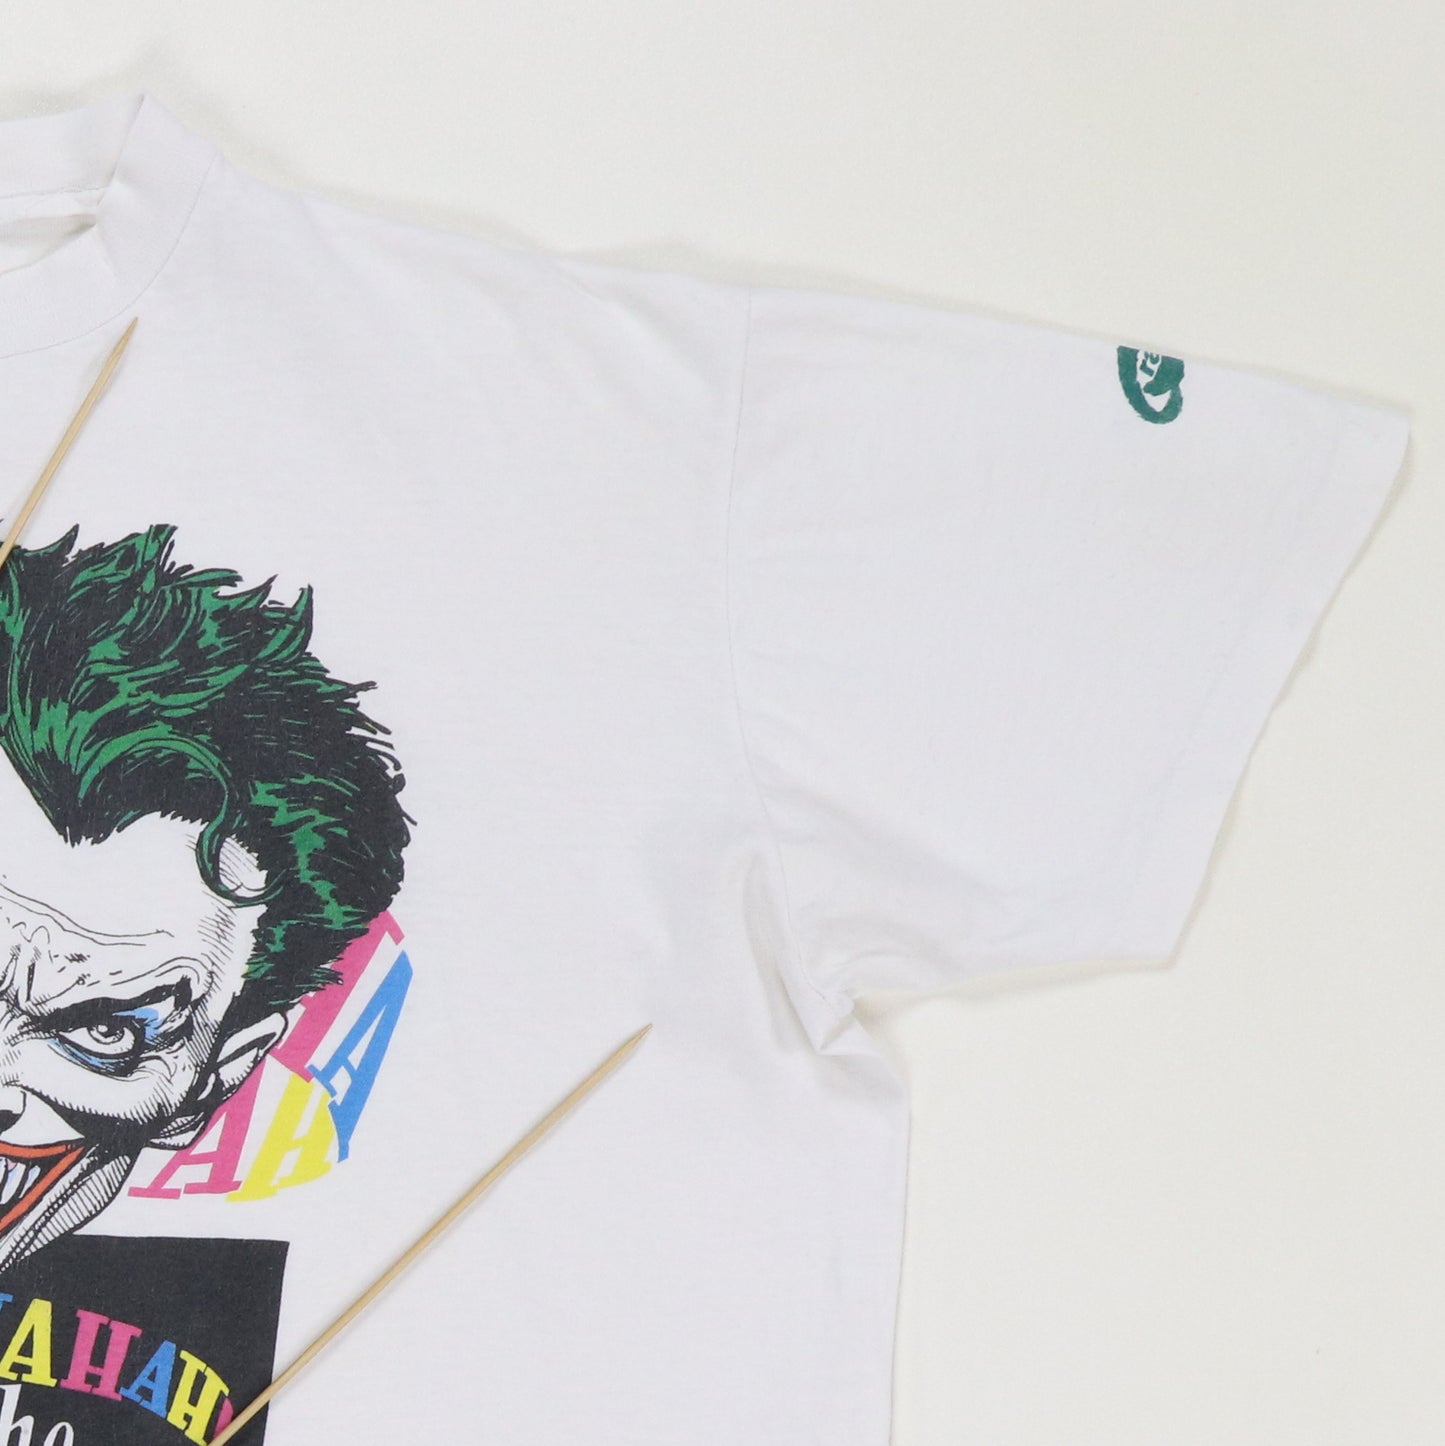 1987 Joker HAHAHA DC Comics Shirt